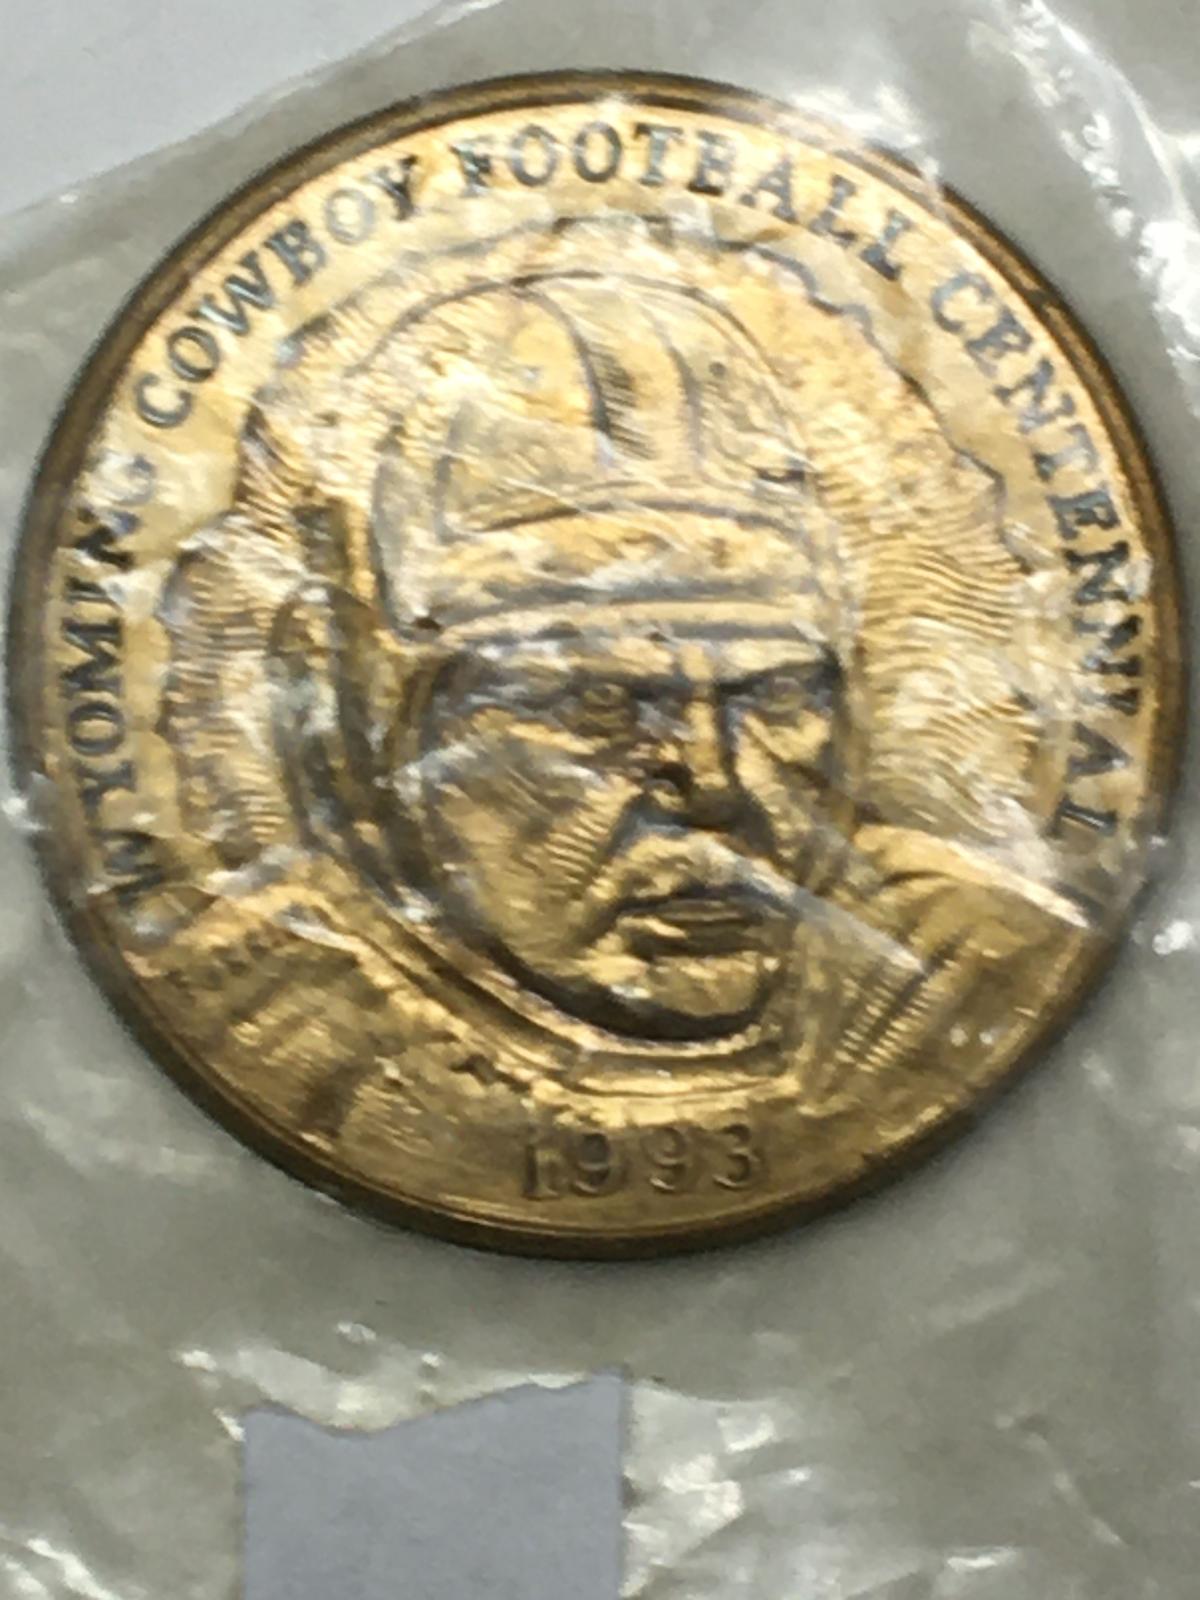 Wyoming Cowboy Football Centennial Copper Coin 1993